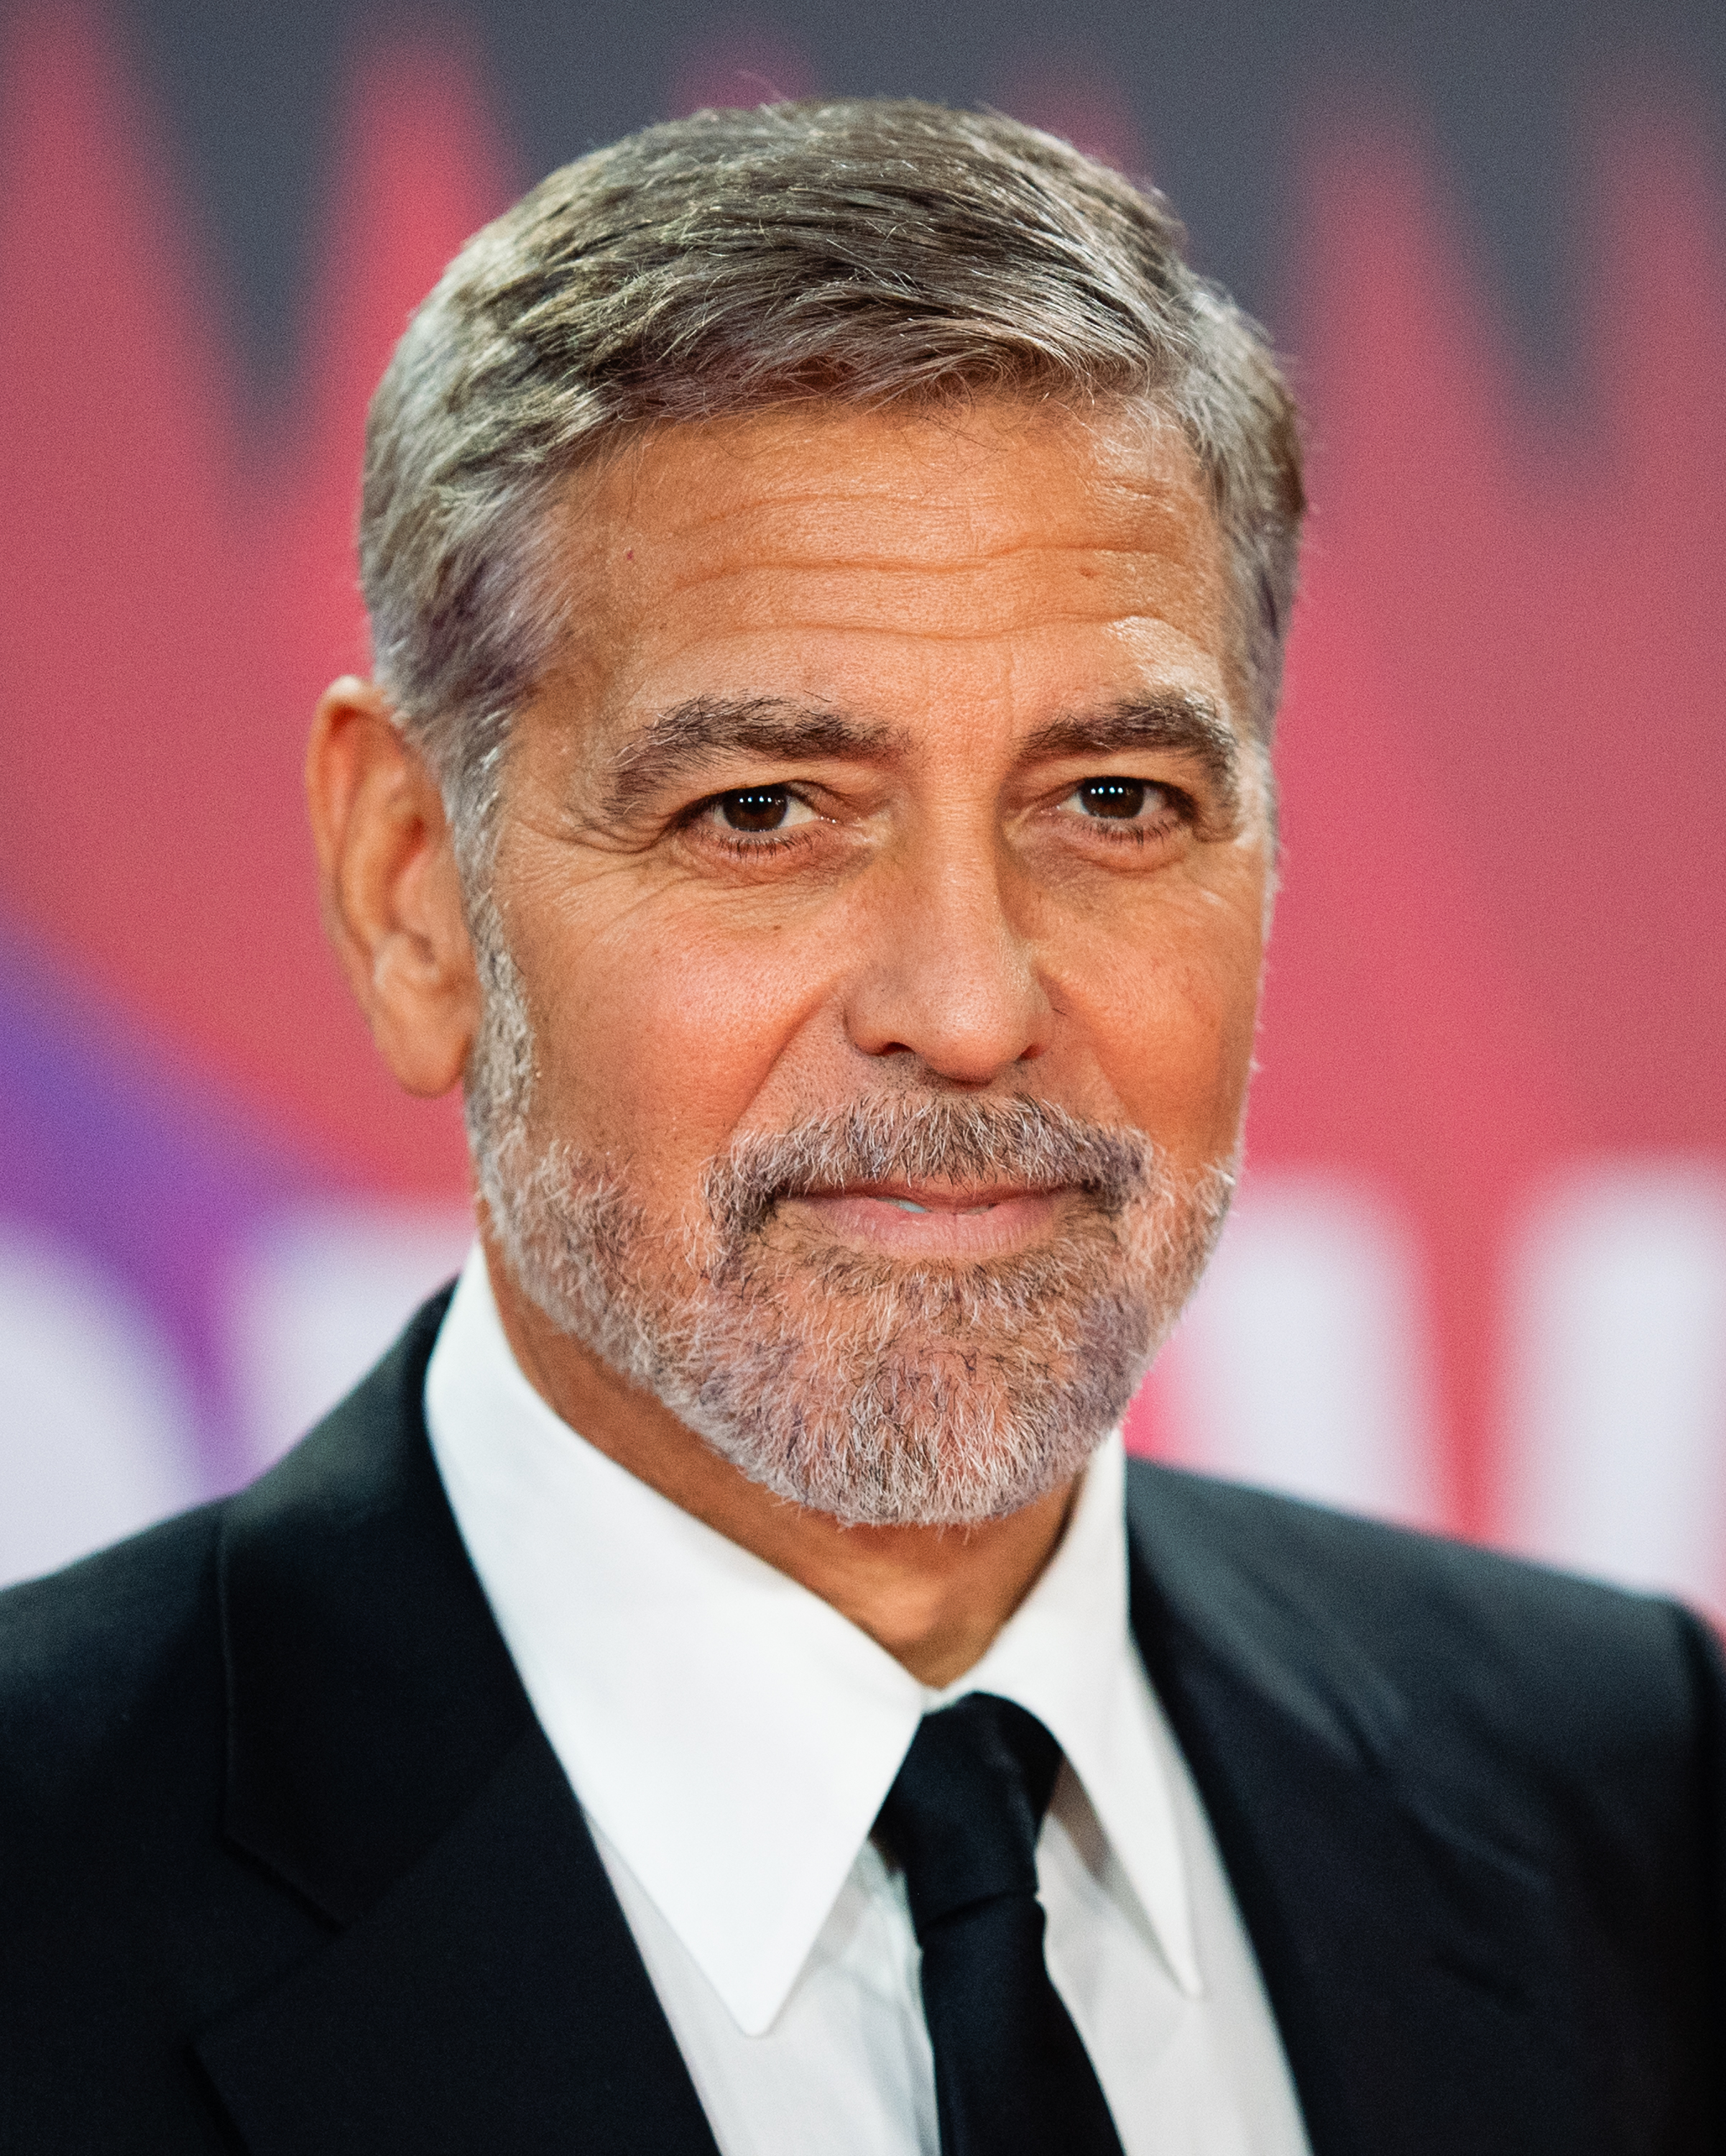 George Clooney besucht die Premiere von "The Tender Bar" während des 65. BFI London Film Festivals in der Royal Festival Hall am 10. Oktober 2021 in London, England. | Quelle: Getty Images